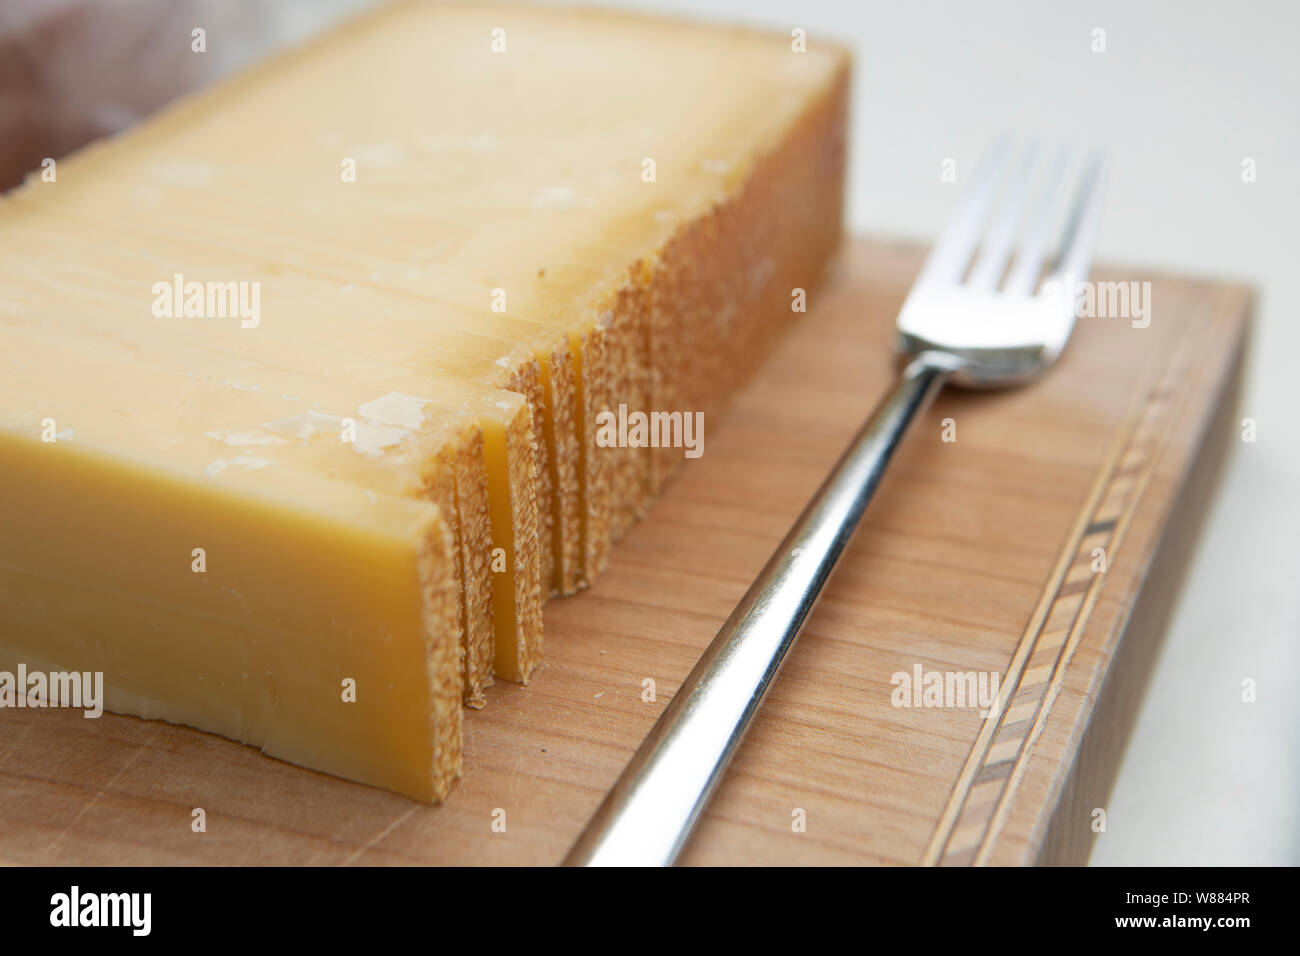 Grande tranche de fromage traditionnel autrichien avec écorce sur une plaque de bois à l'aide d'une fourchette Banque D'Images